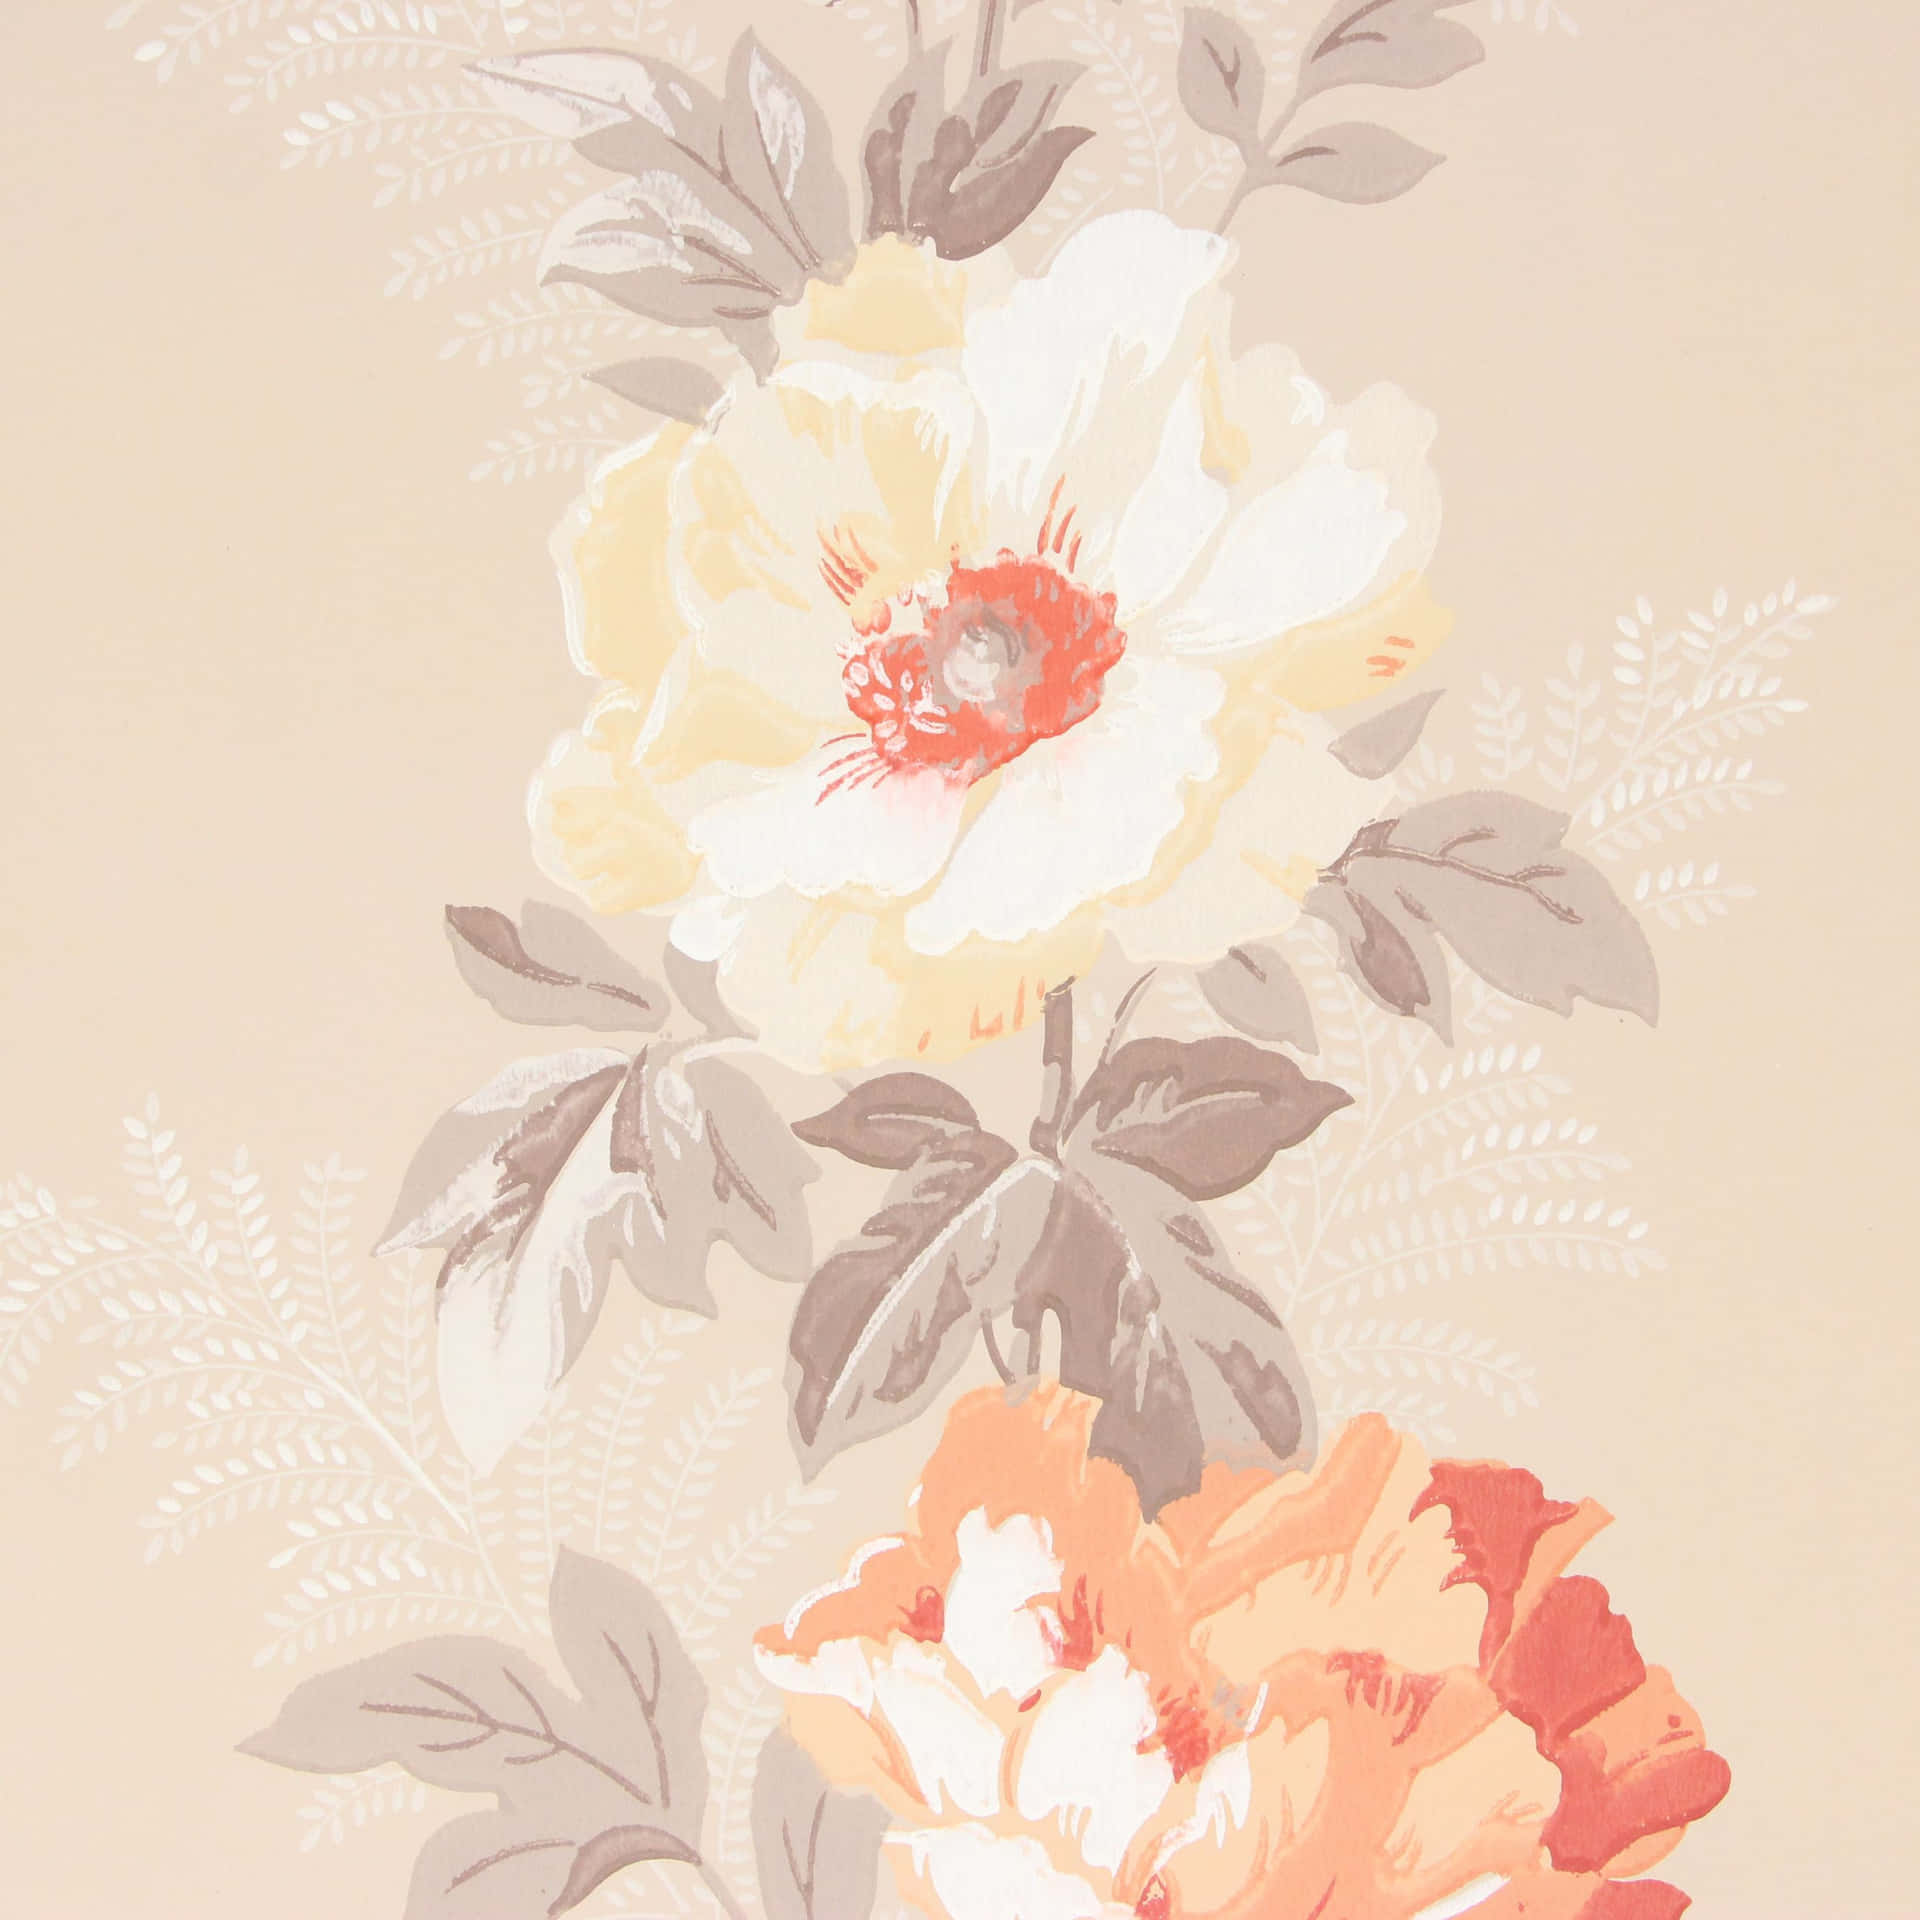 Einelebendige Farbpalette Aus Pfirsich- Und Orangentönen, Mit Subtilen Anklängen Von Rosa, Rot Und Lila. Wallpaper